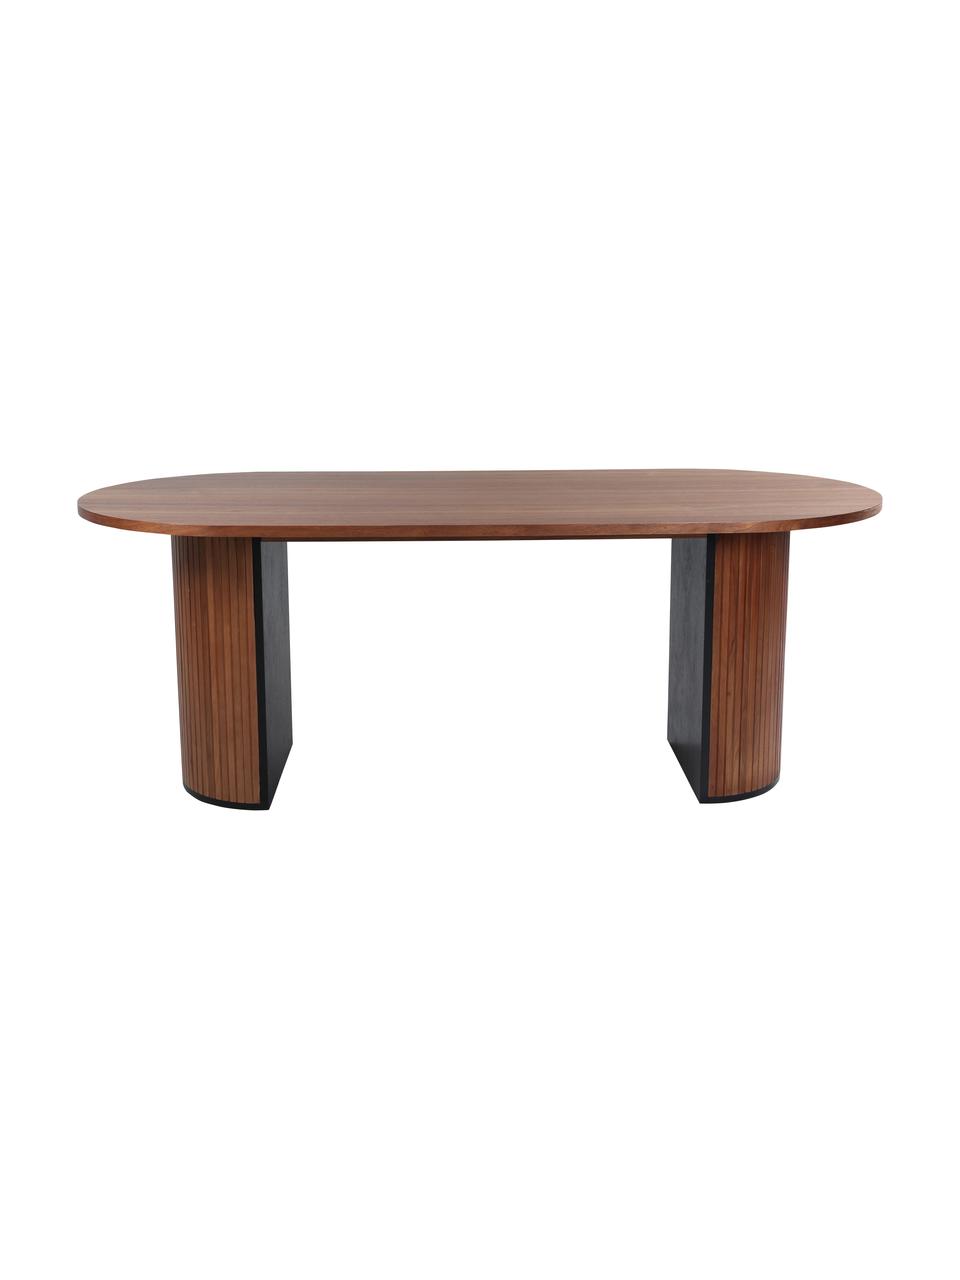 Oválny jedálenský stôl Bianca, 200 x 90 cm, Dubové drevo, s tmavým lakom, Š 200 x H 90 cm